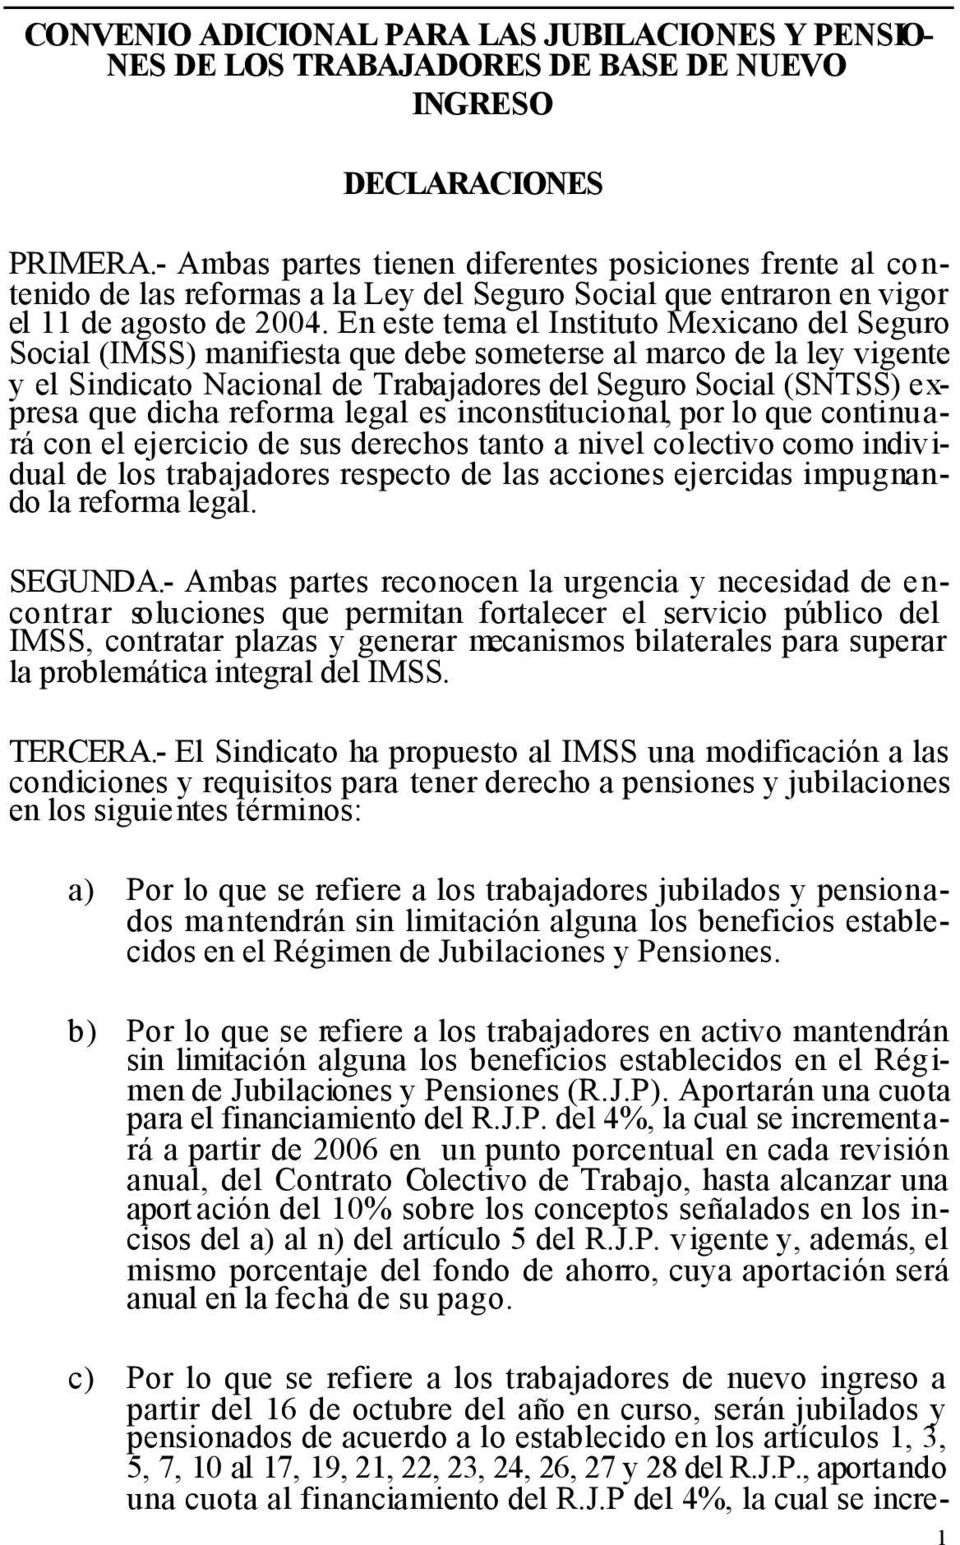 En este tema el Instituto Mexicano del Seguro Social (IMSS) manifiesta que debe someterse al marco de ley vigente y el Sindicato Nacional de Trabajadores del Seguro Social (SNTSS) expresa que dicha